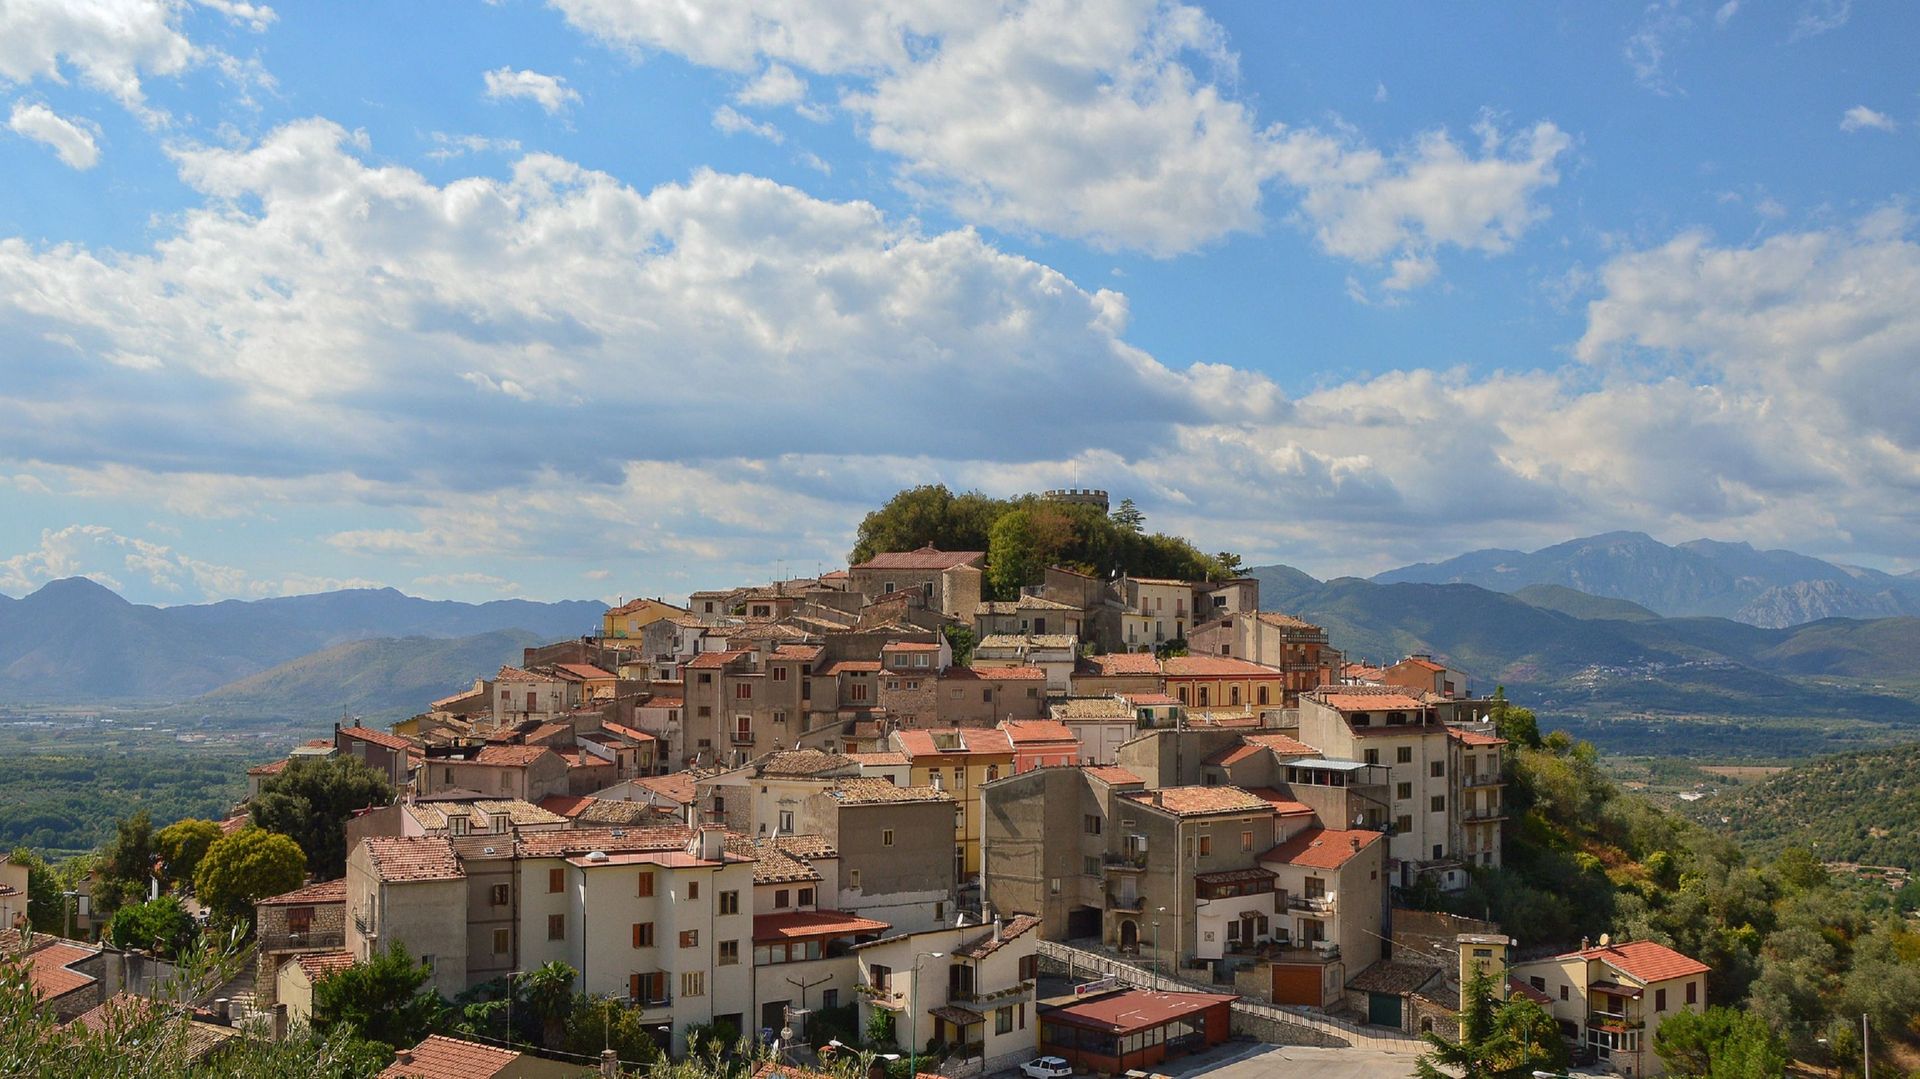 Dans la région du Molise en Italie, un village accueille gratuitement les touristes cet été